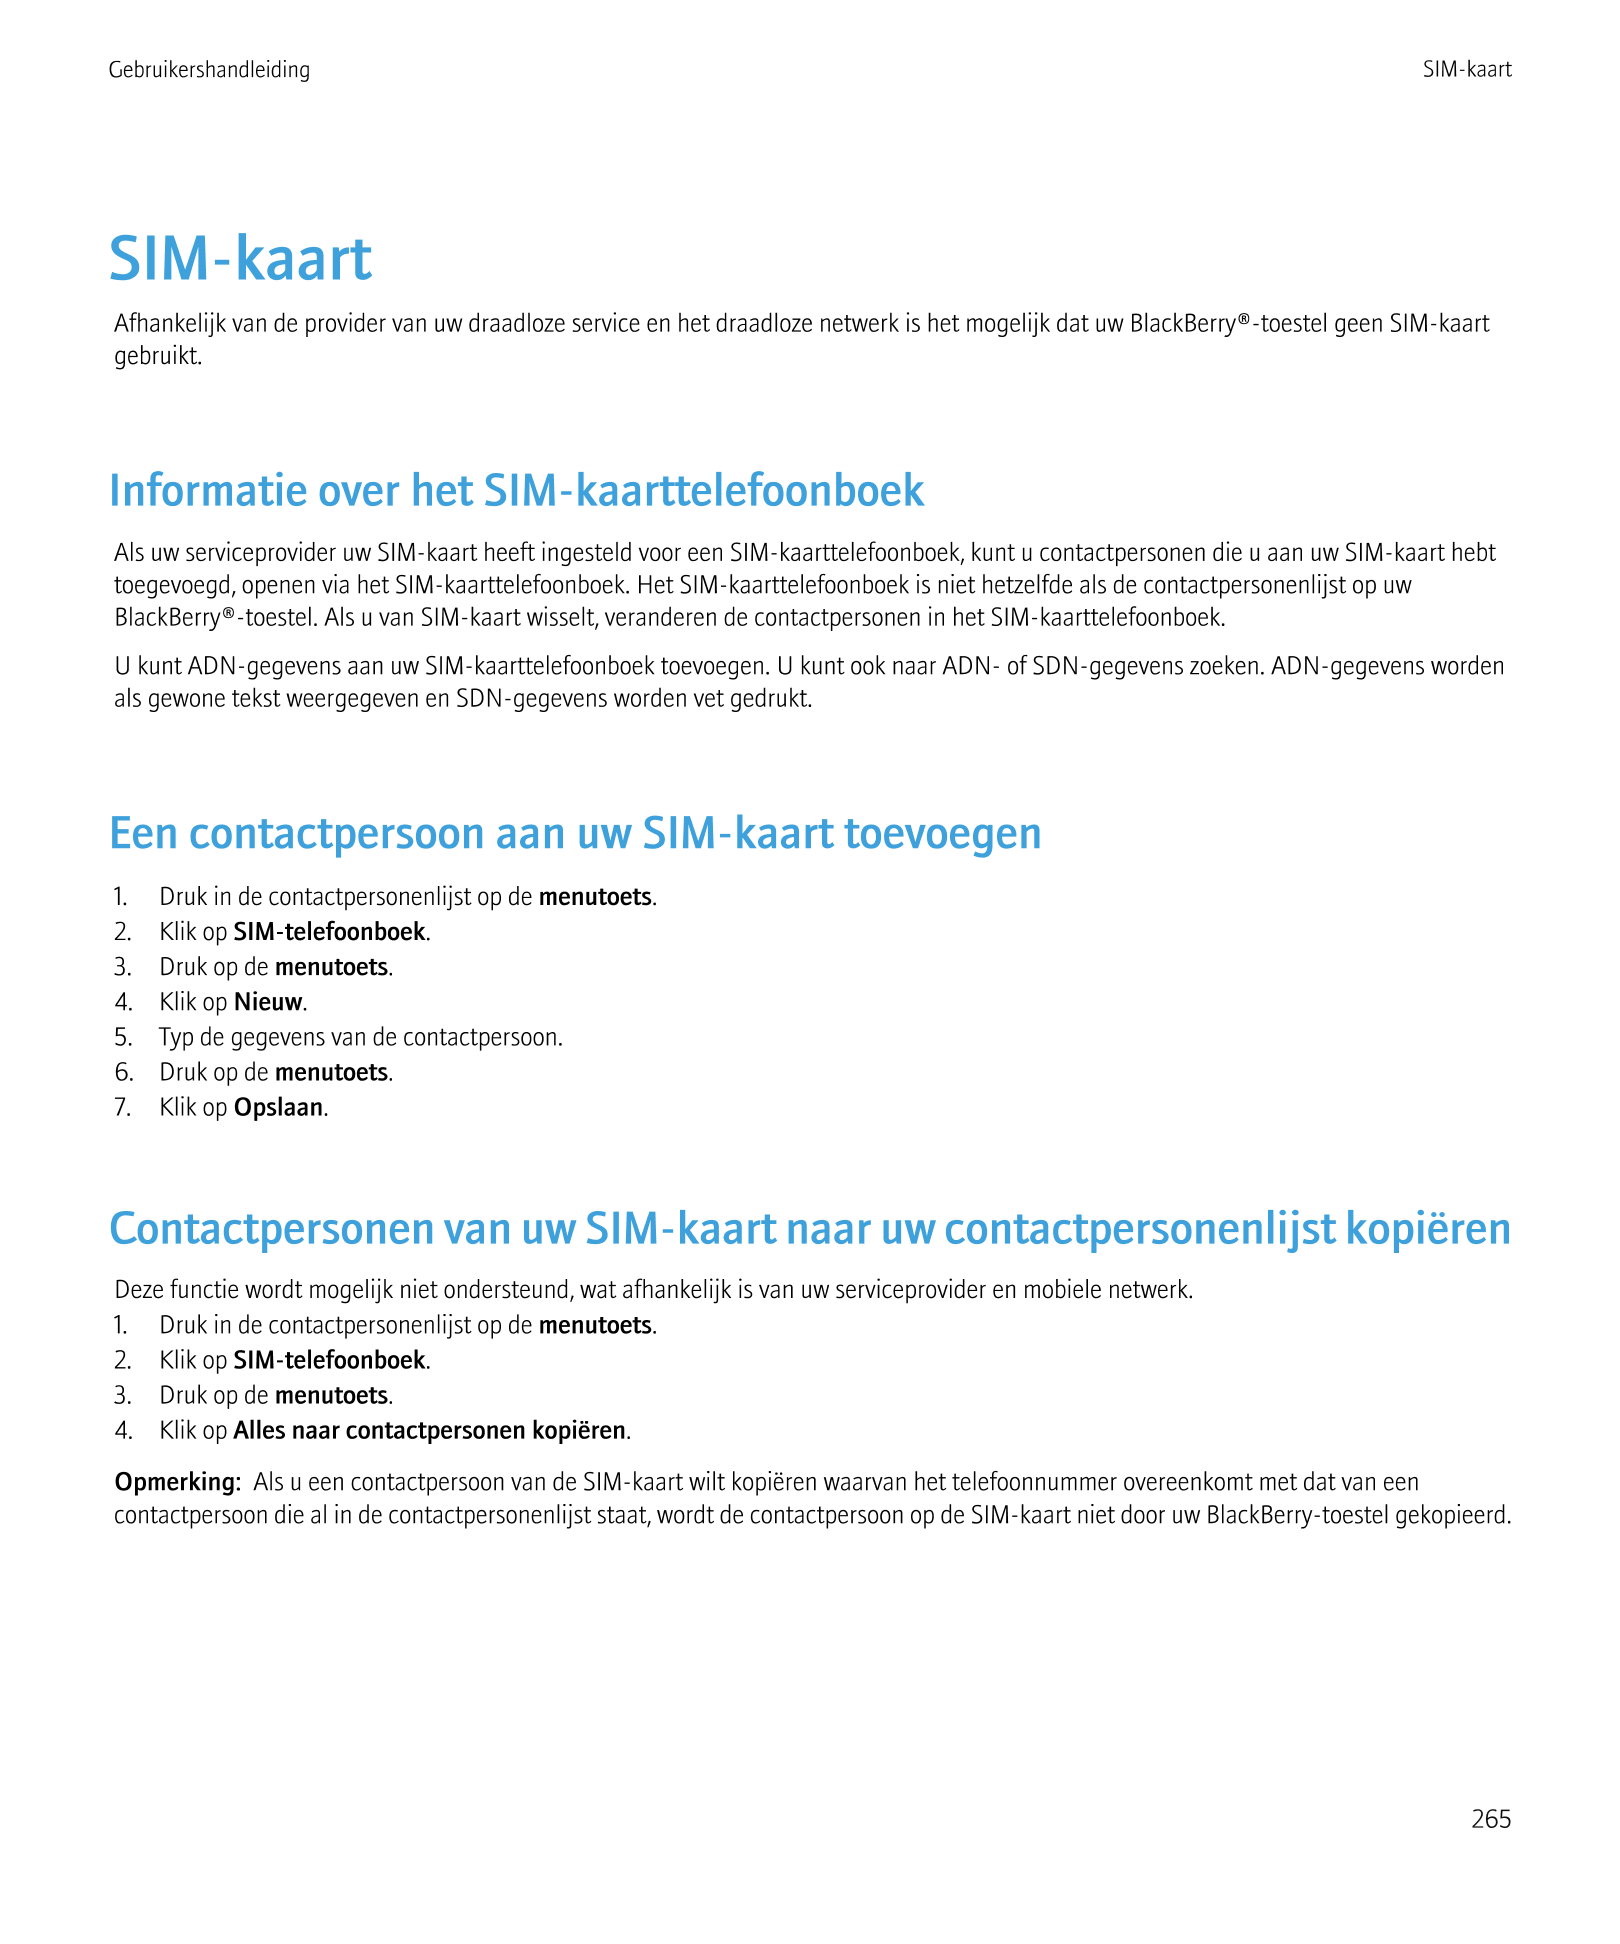 Gebruikershandleiding SIM-kaart
SIM-kaart
Afhankelijk van de provider van uw draadloze service en het draadloze netwerk is het m